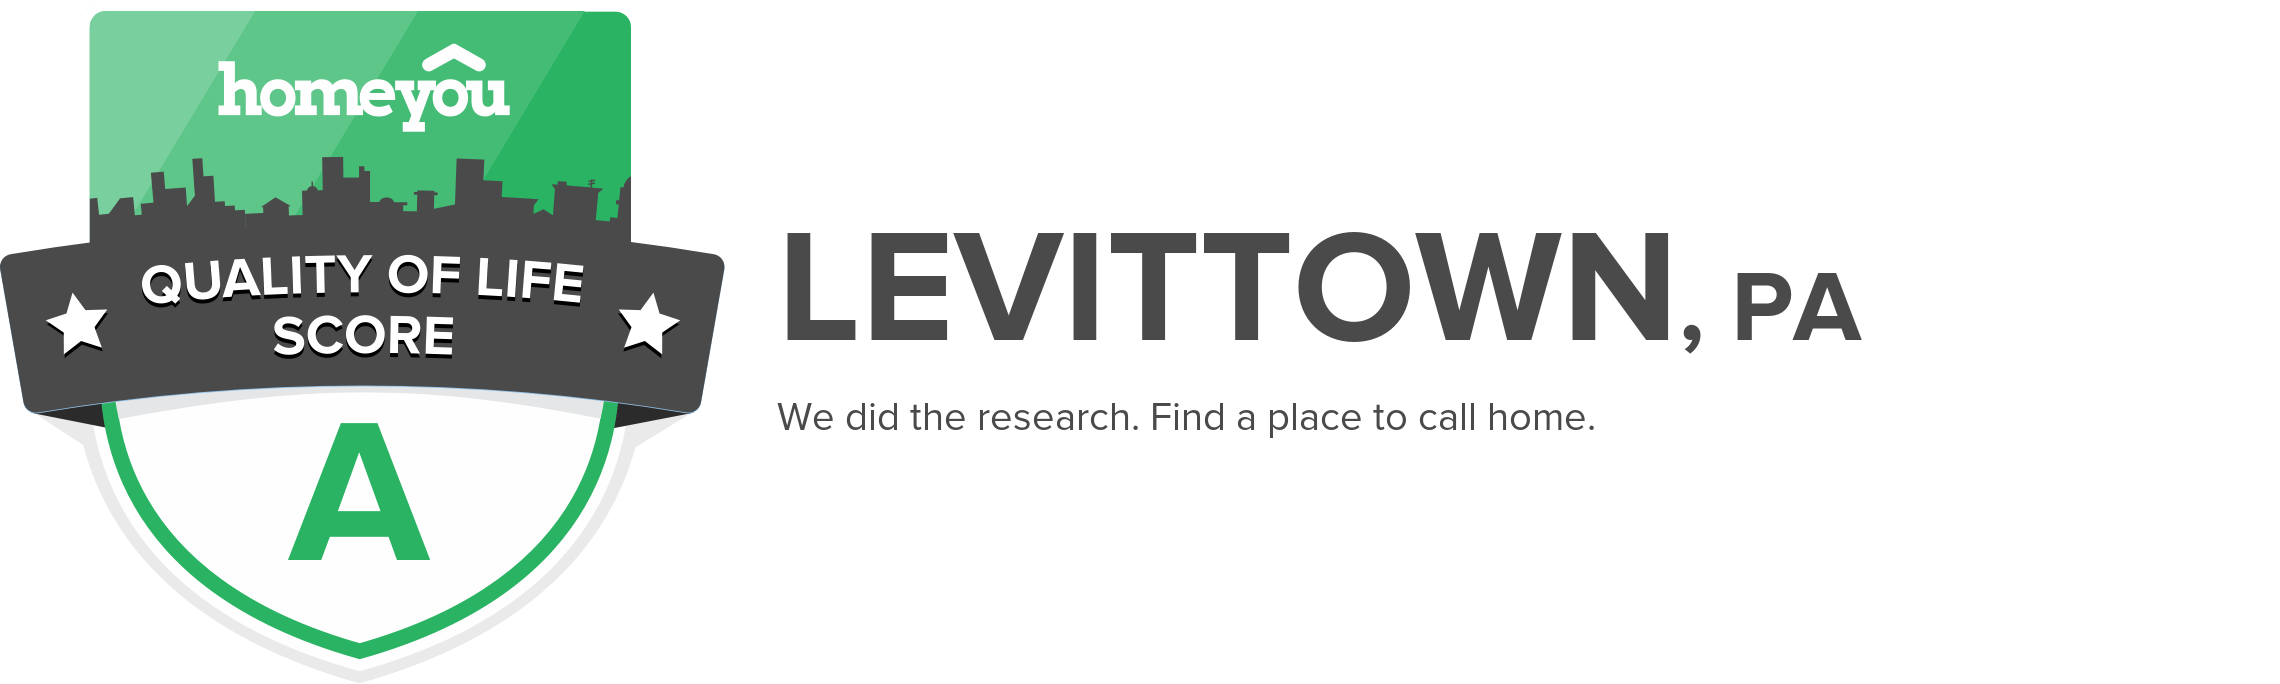 Levittown, PA